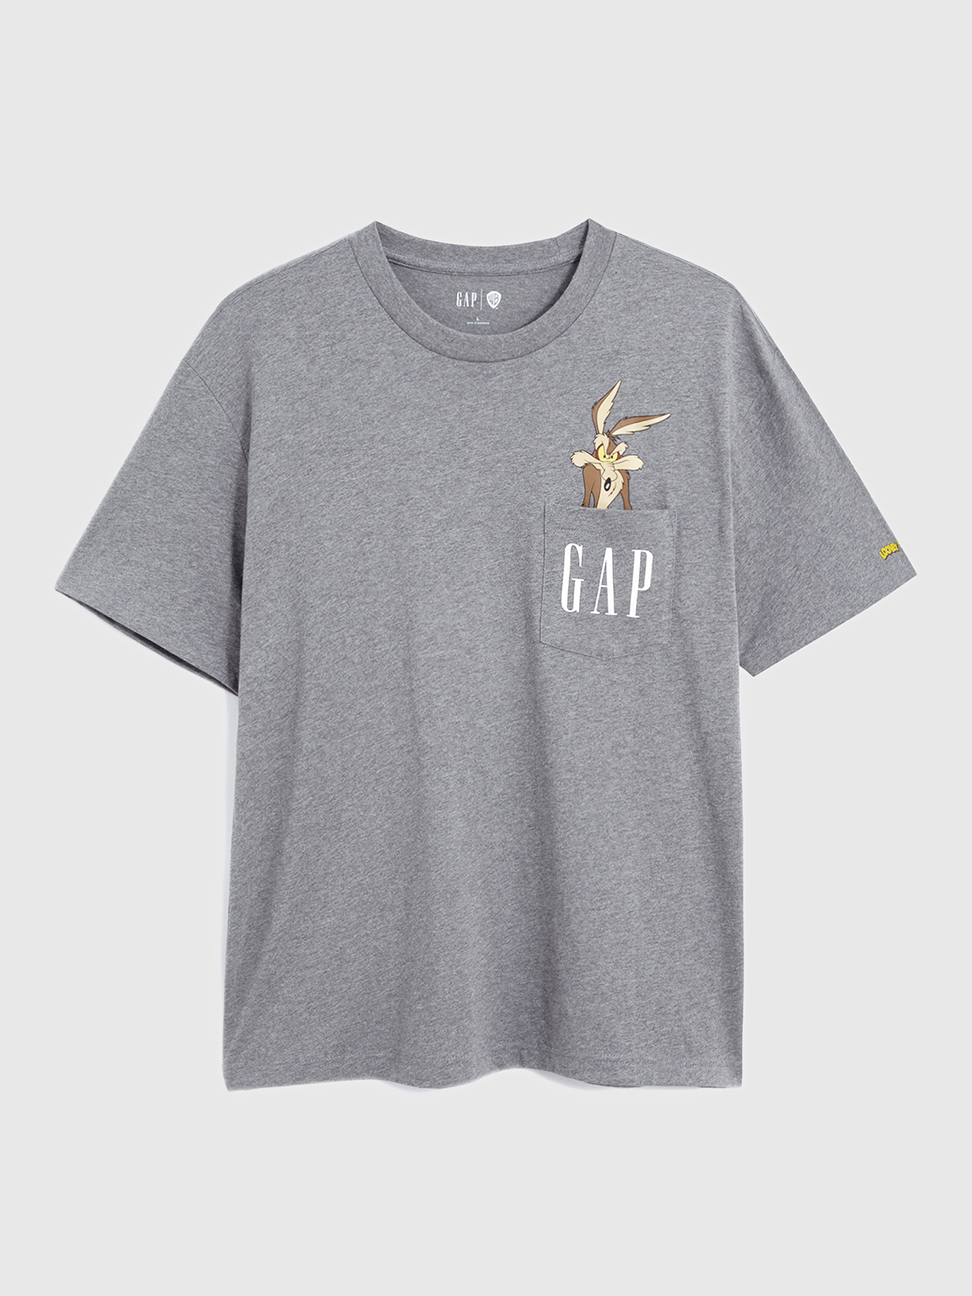 男裝|Gap x Warner Bros聯名 Logo純棉短袖T恤-灰色